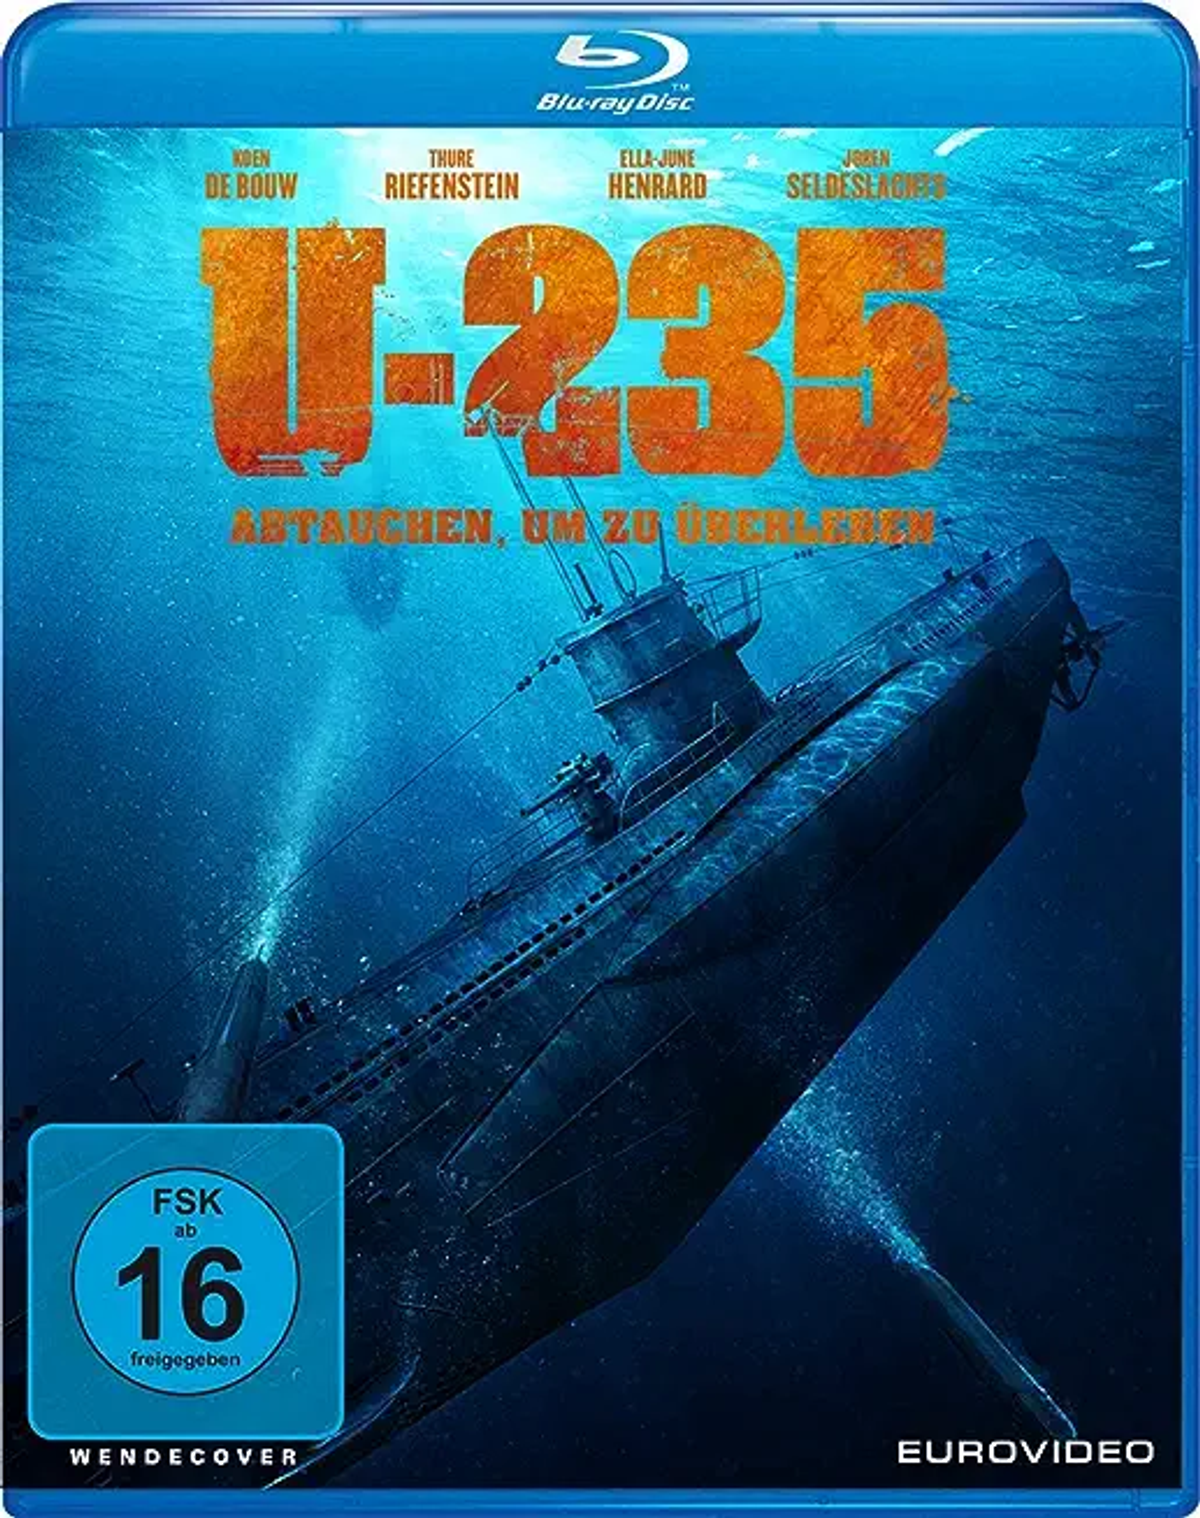 U-235 Blu-ray um zu Abtauchen, - überleben